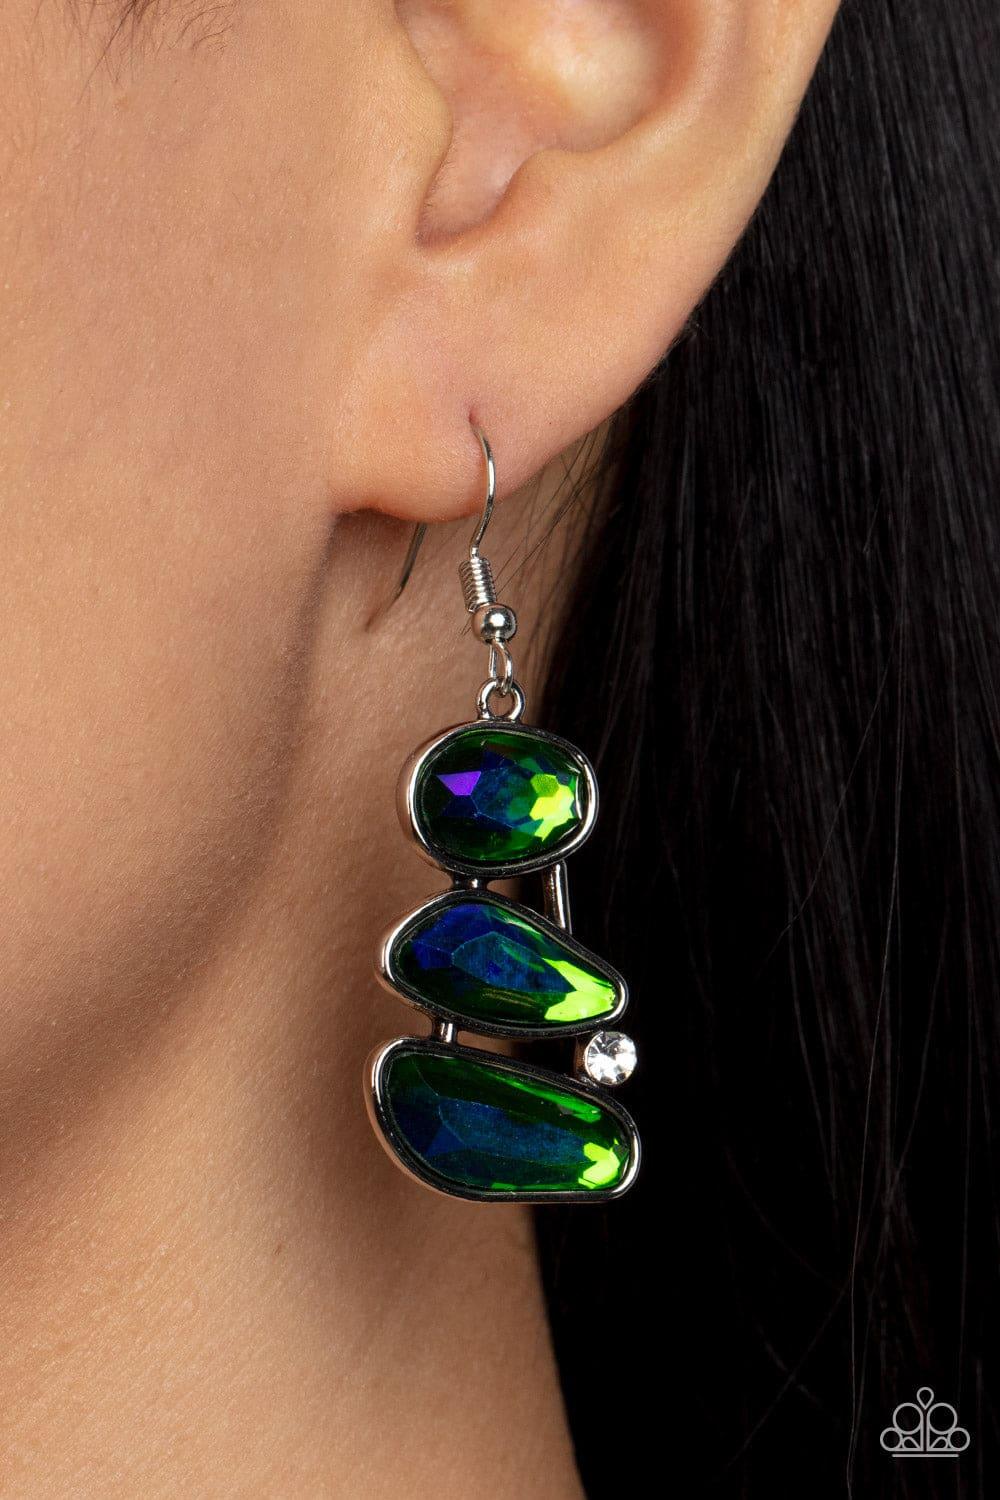 Paparazzi Accessories - Gem Galaxy - Green Earrings - Bling by JessieK